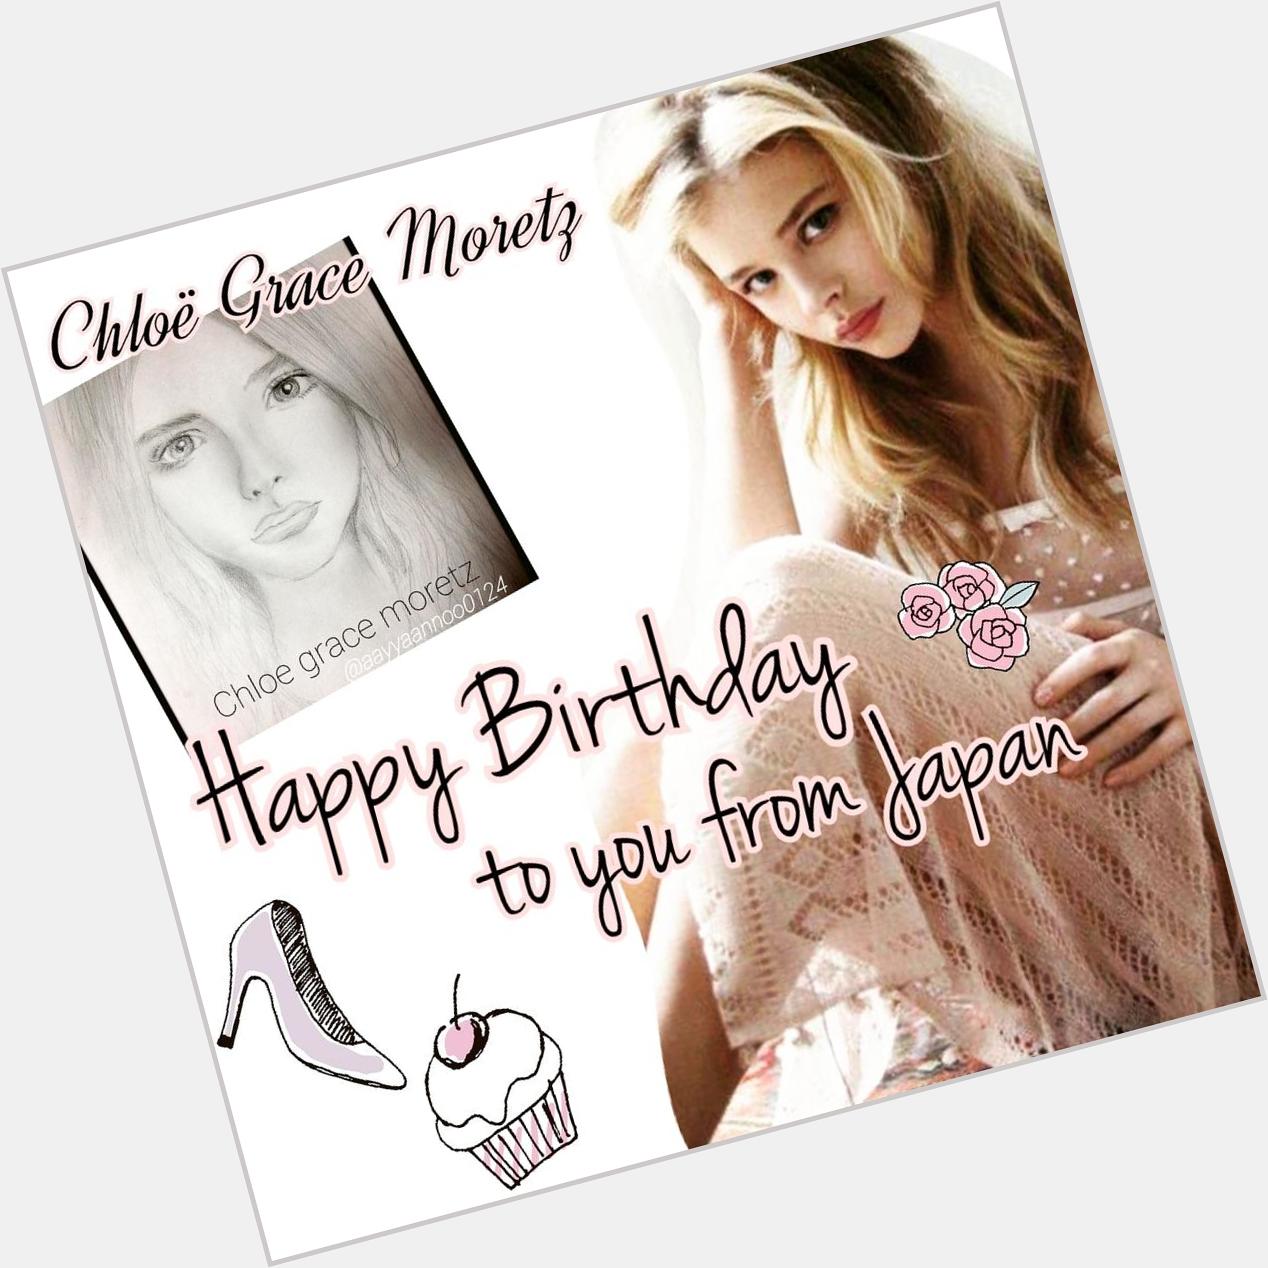  Happy Birthday Chloë Grace Moretz!!! I love you 